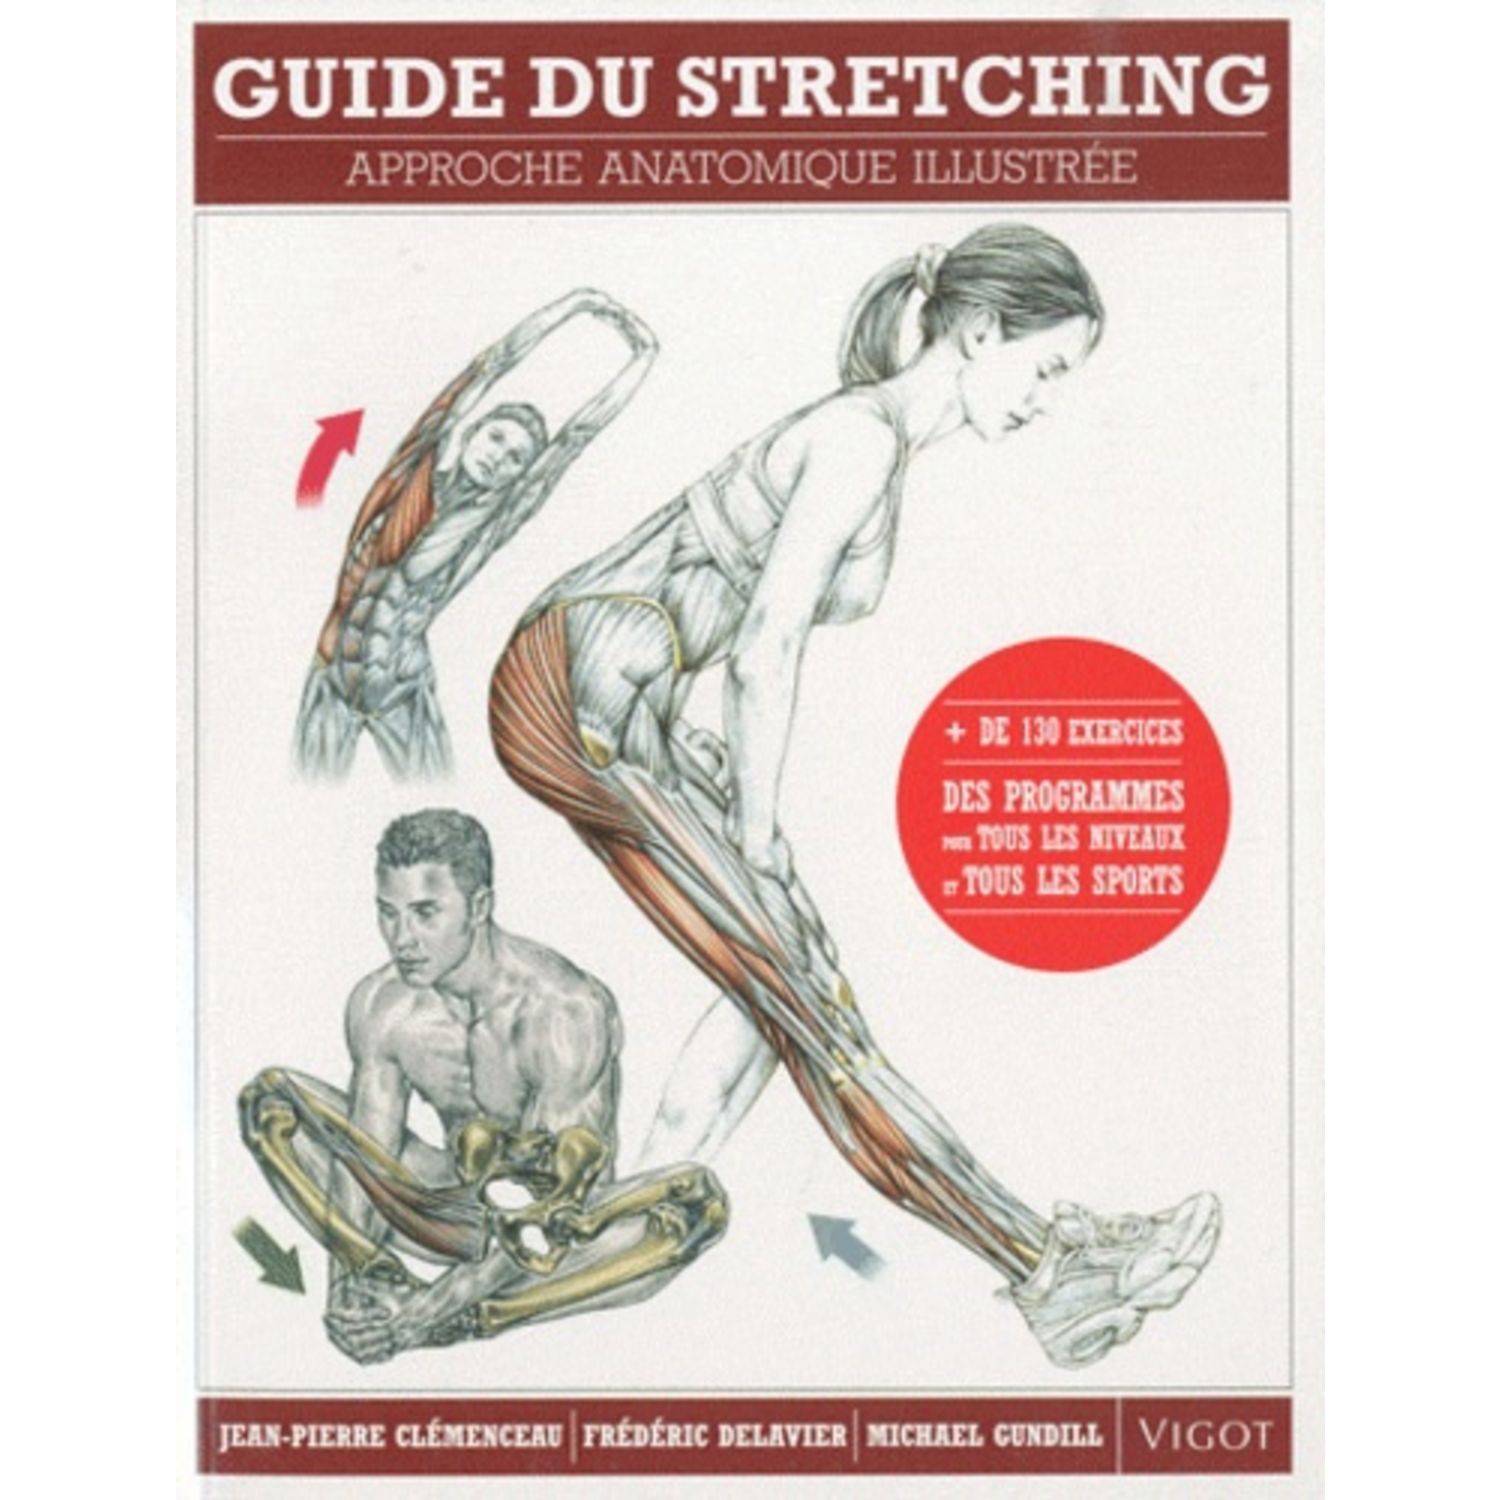 Guide des mouvements de musculation : approche anatomique (6e